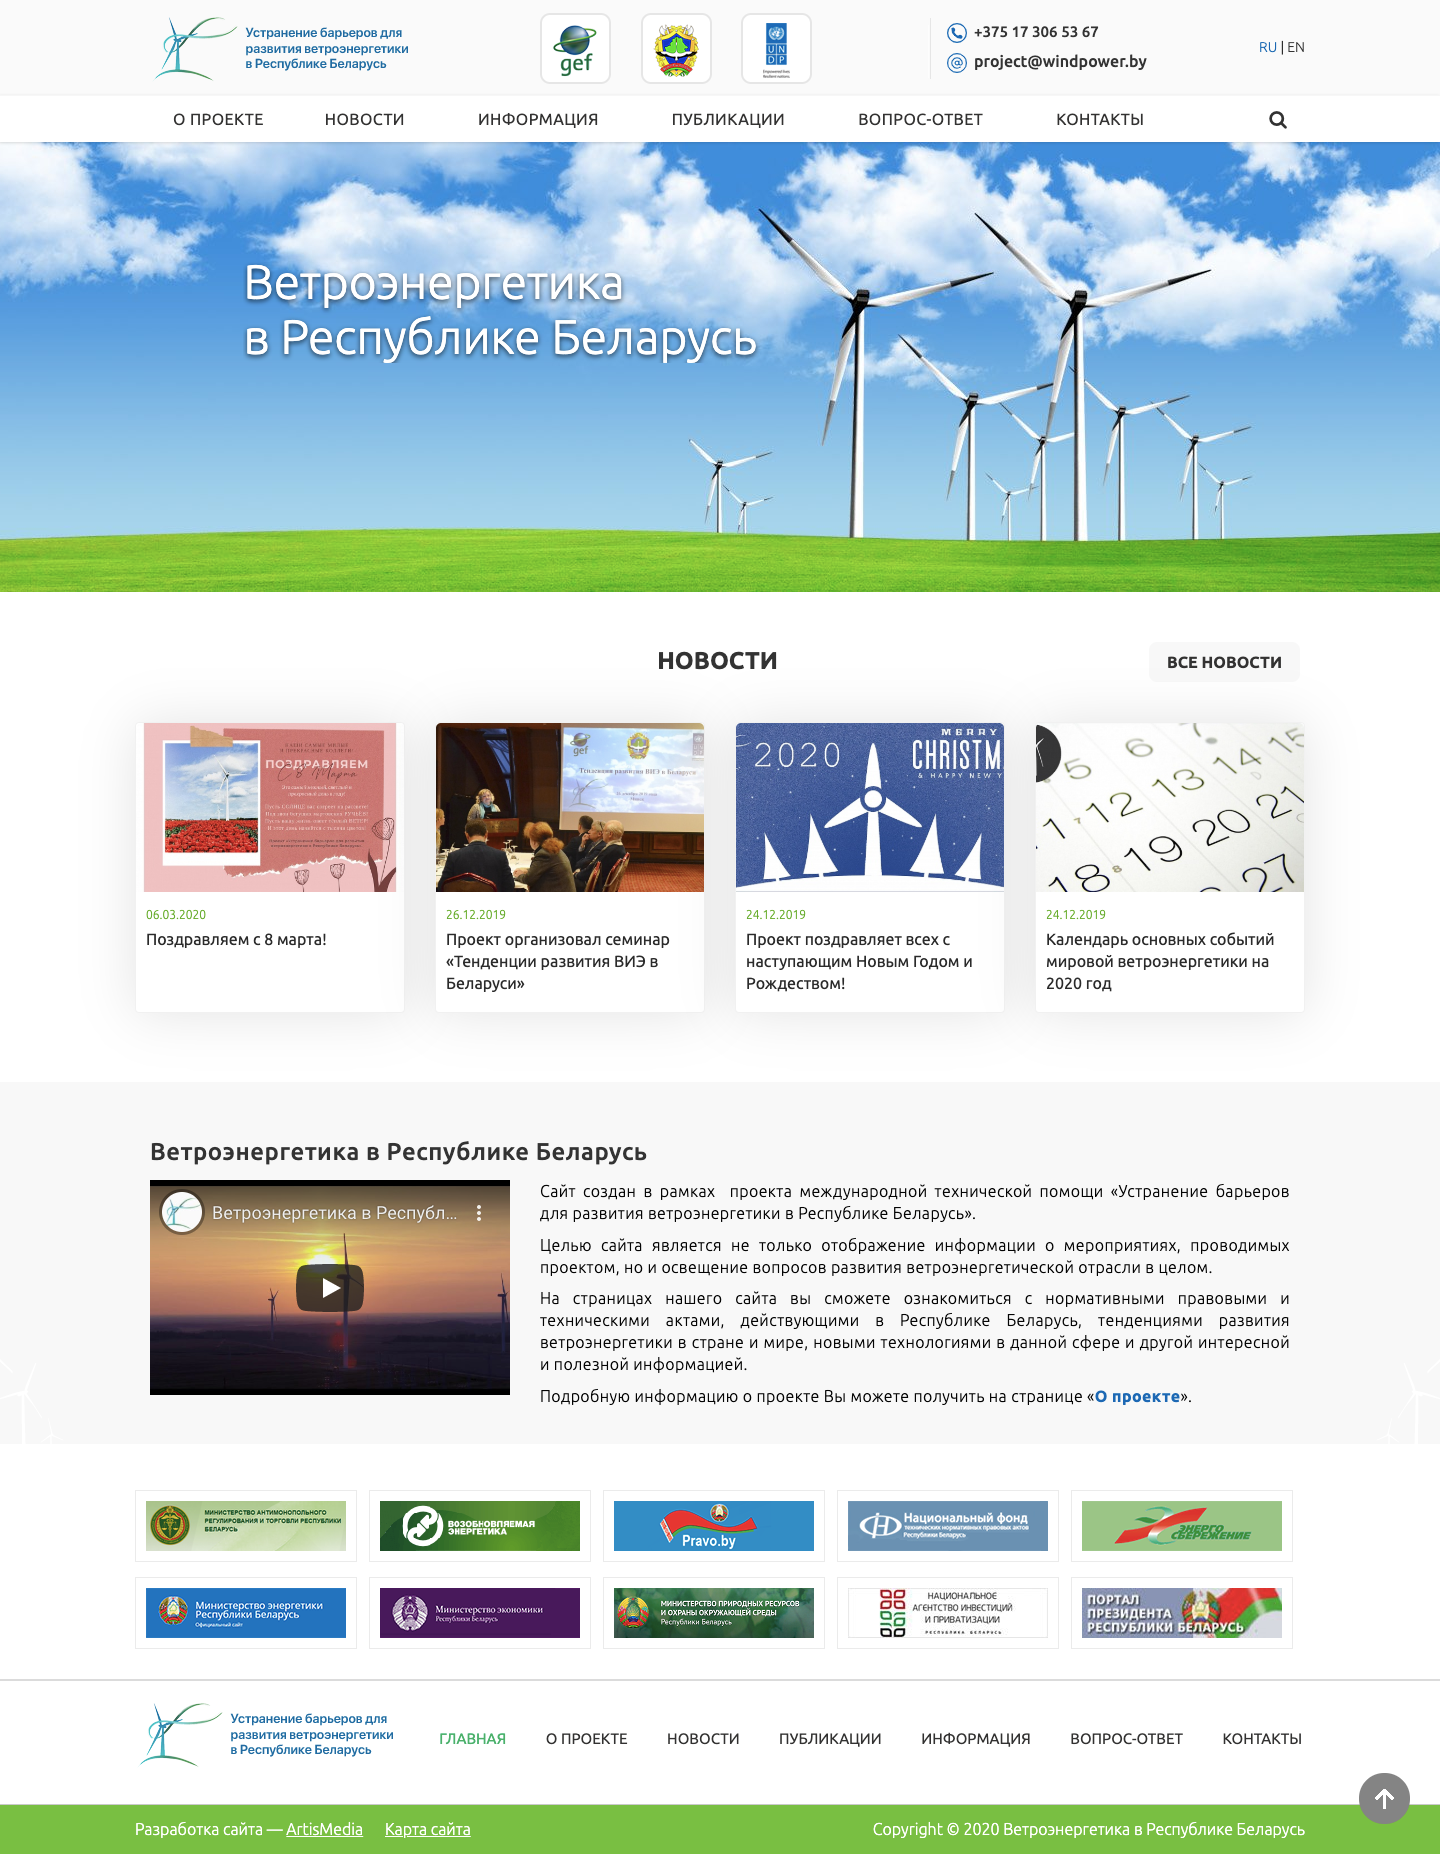 Сайт проекта международной технической помощи «Устранение барьеров для развития ветроэнергетики в Республике Беларусь»